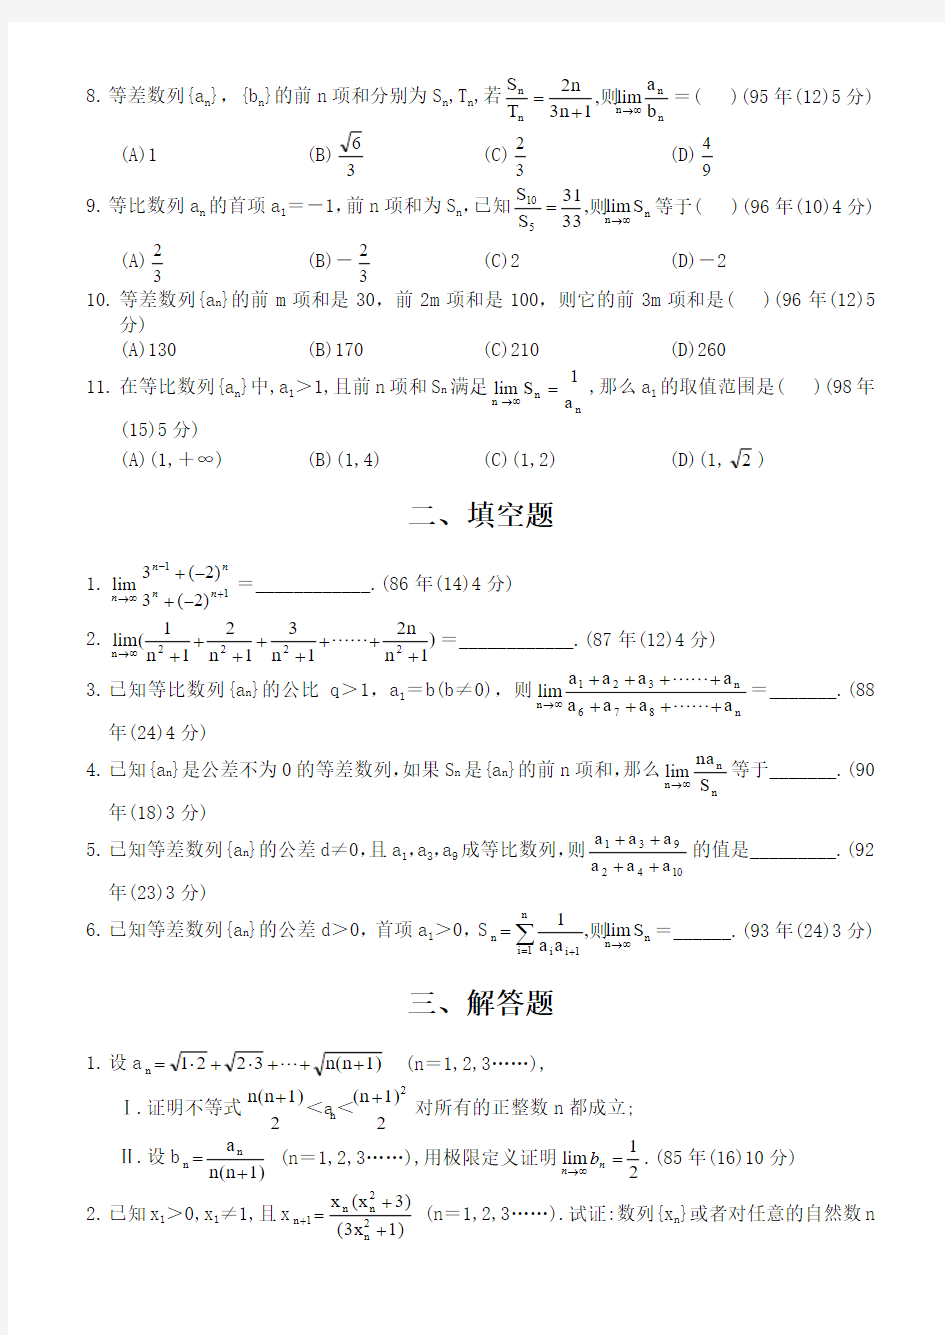 数列、极限与数学归纳法(2003年以前)